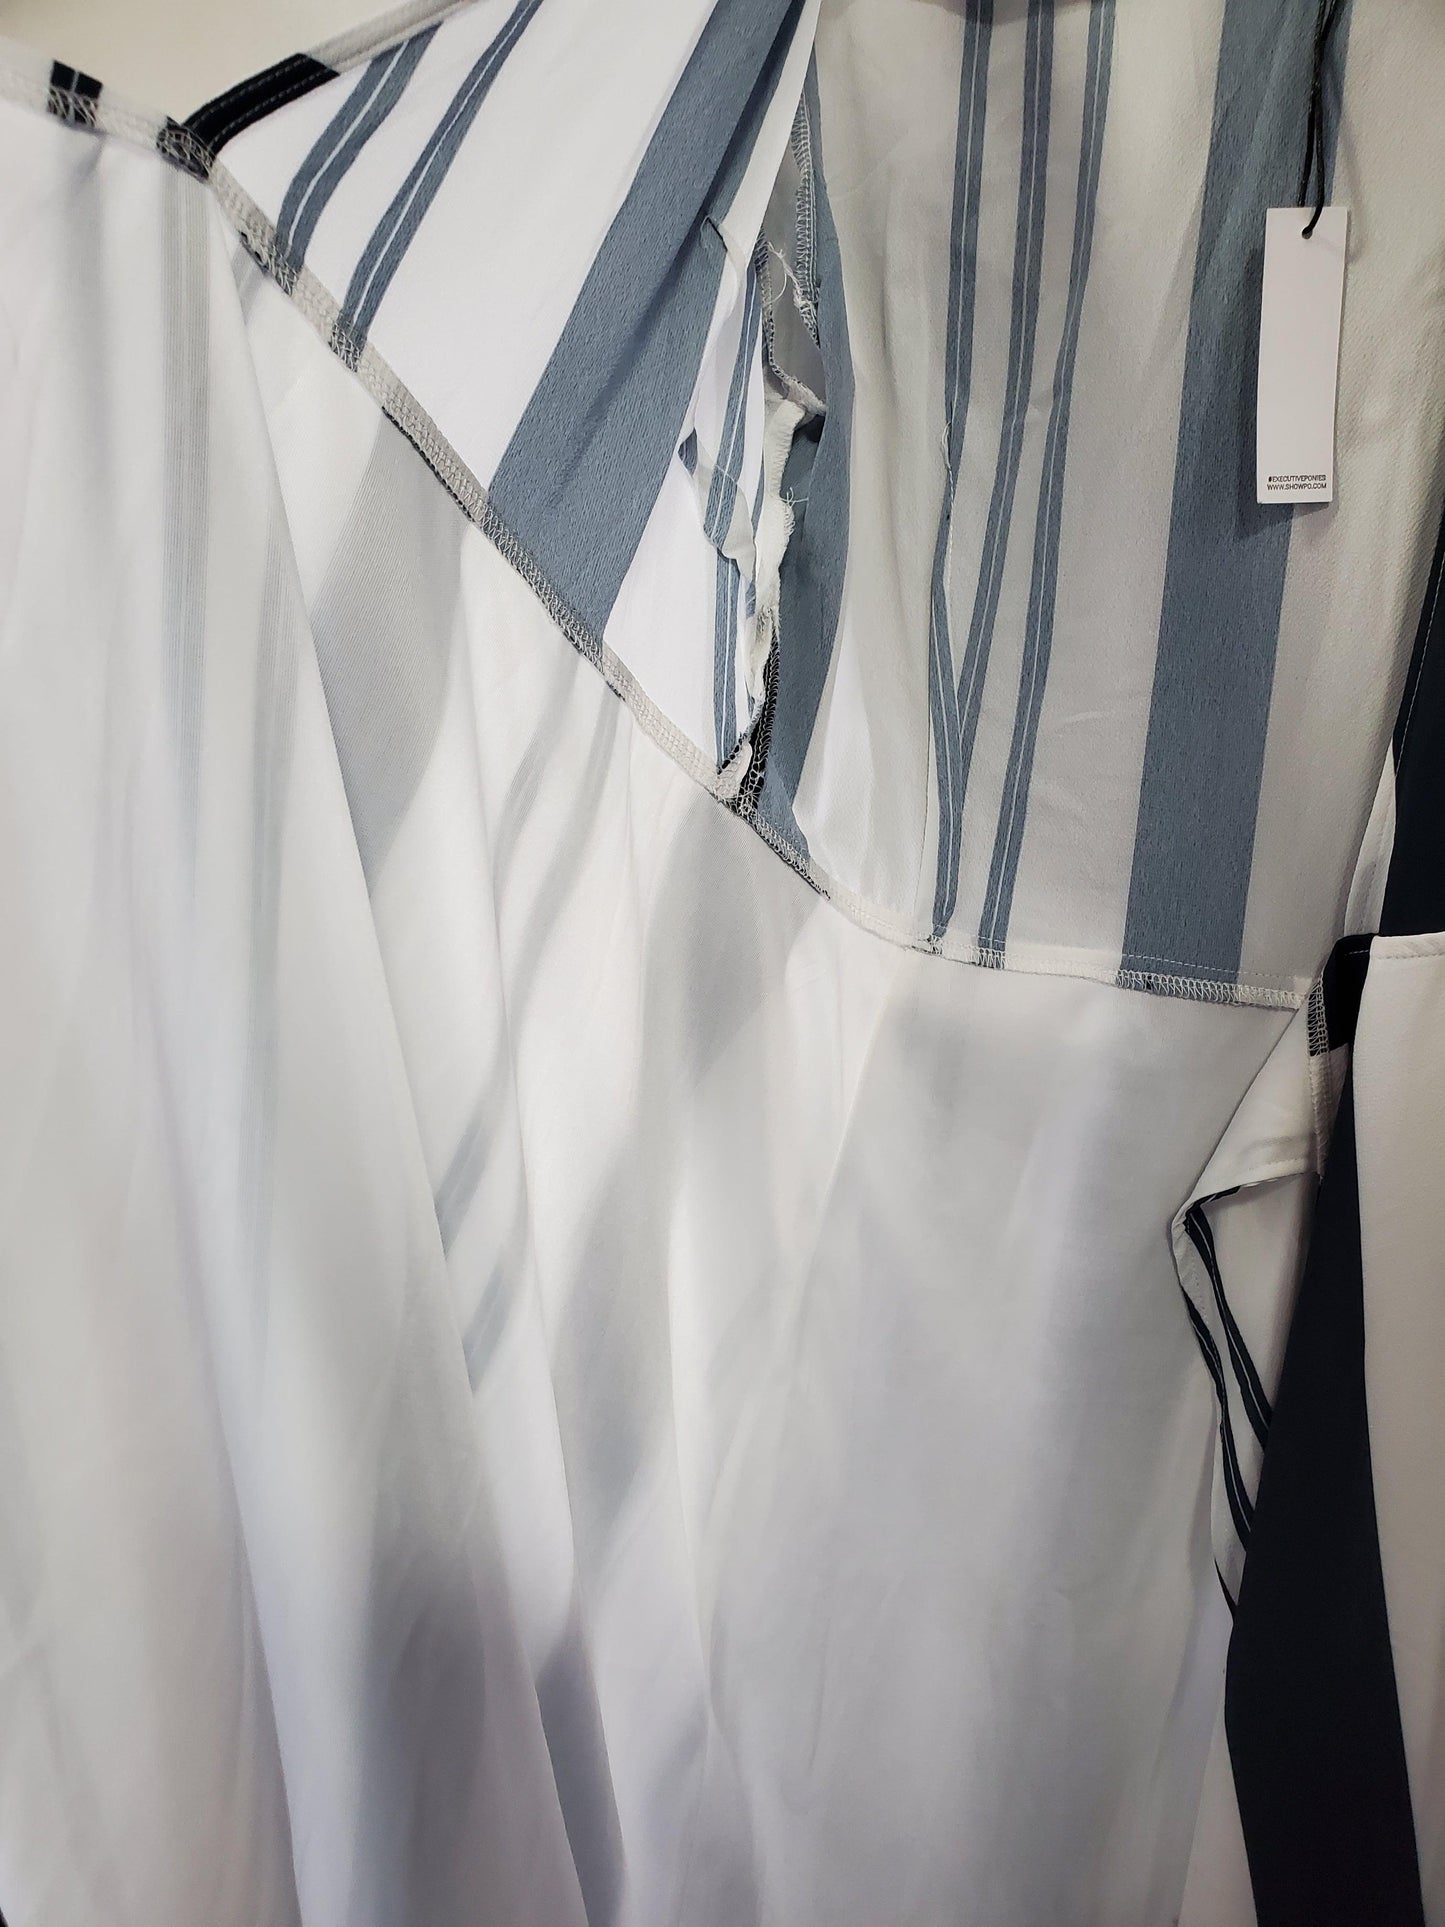 Executive Ponies women's blue and white long wrap dress size 12 - Solé Resale Boutique thrift